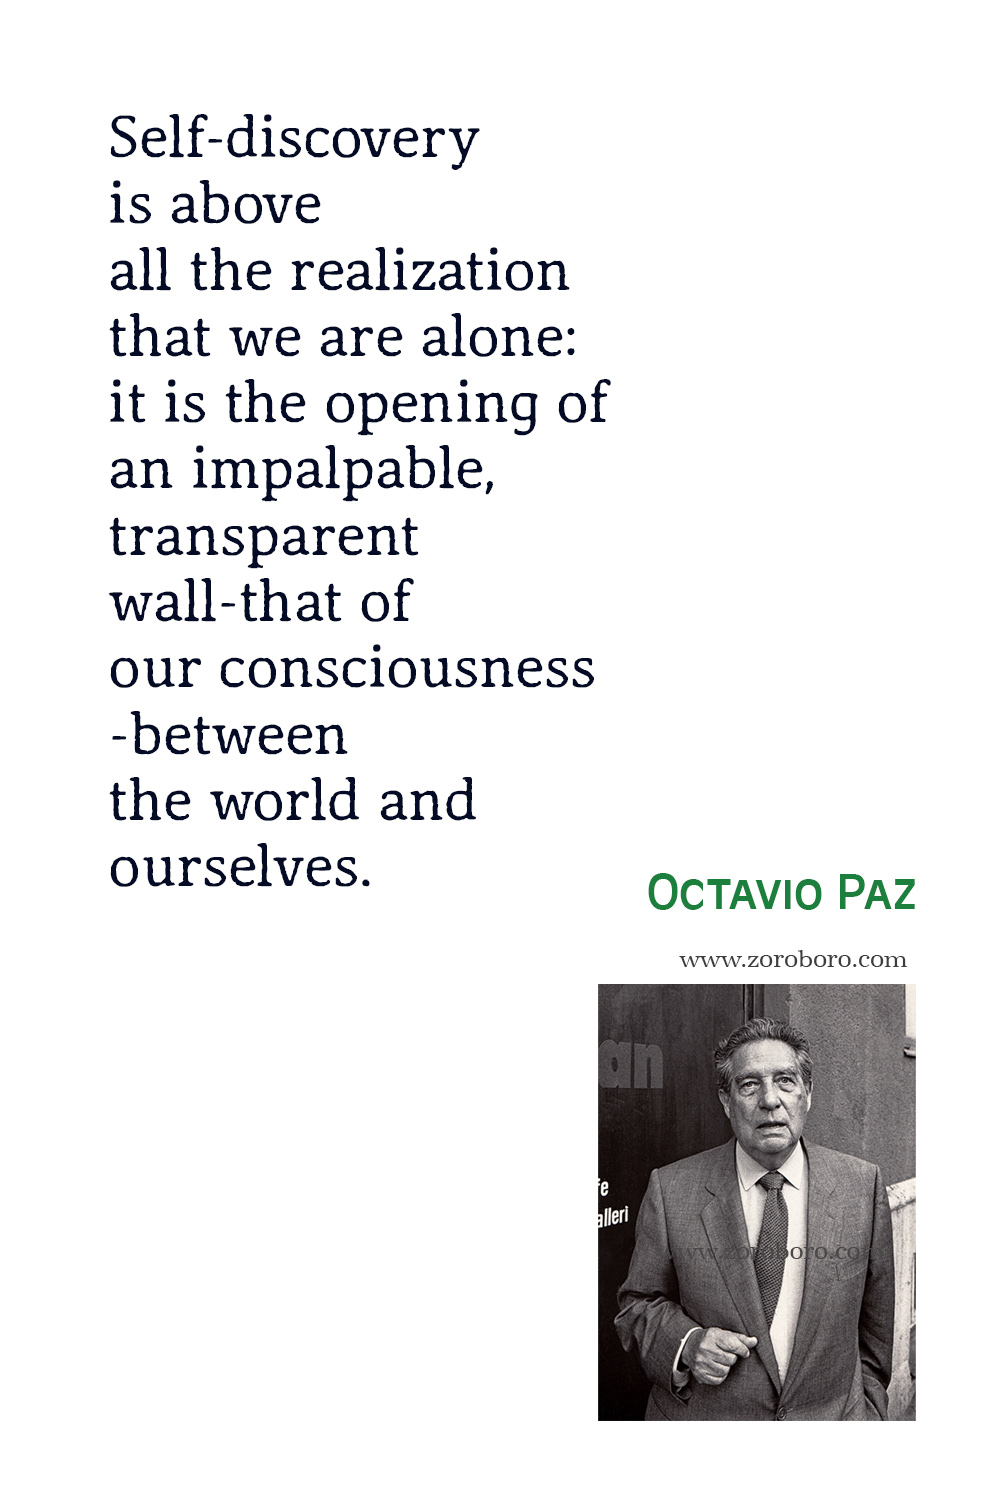 Octavio Paz Quotes, Octavio Paz Poemas, Octavio Paz Poems, Octavio Paz Poetry, Octavio Paz Books Quotes, Octavio Paz.